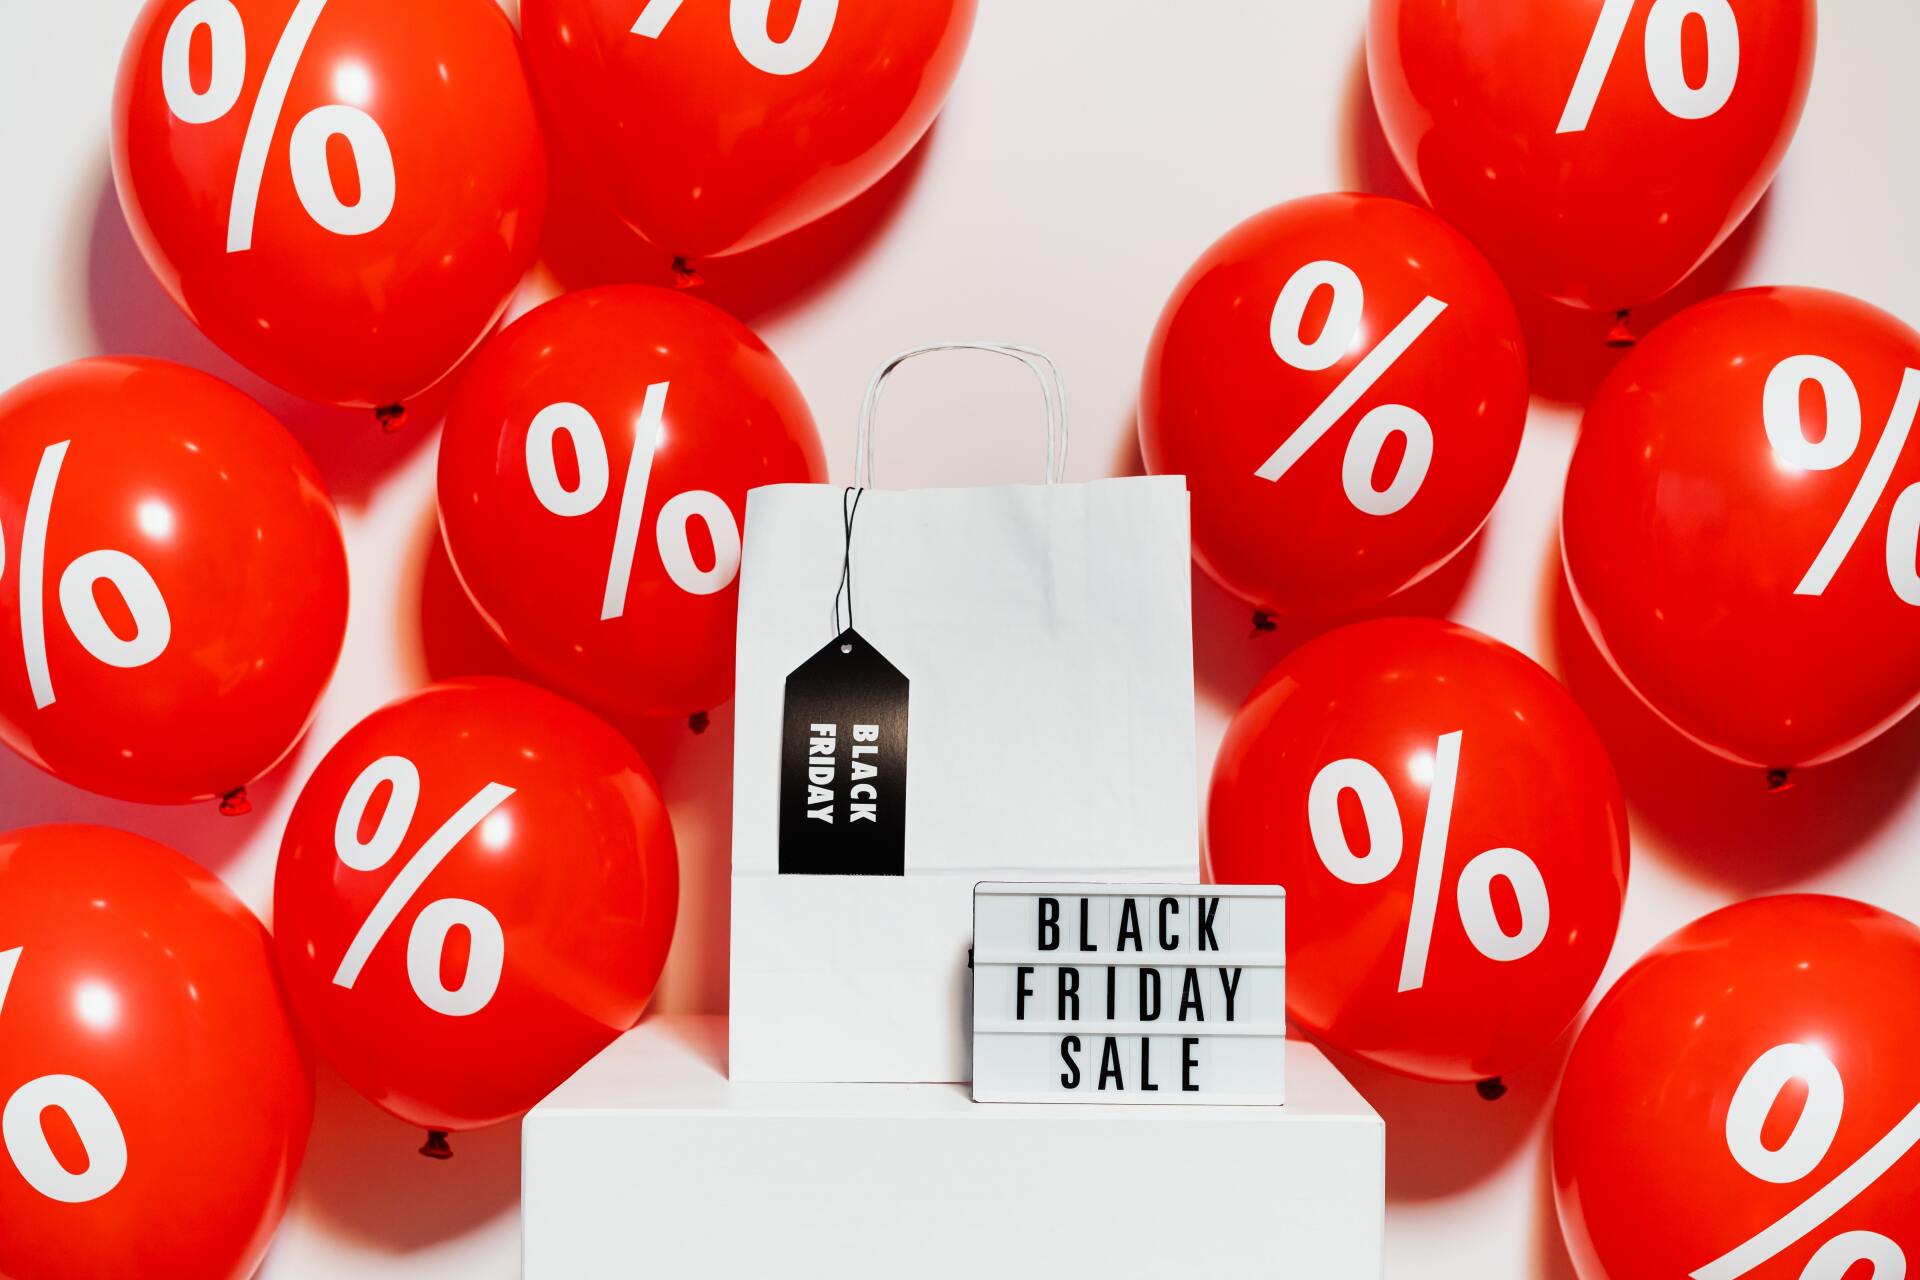 Balões vermelhos com símbolo de percentagem e saco de papel branco com cartaz Black Friday